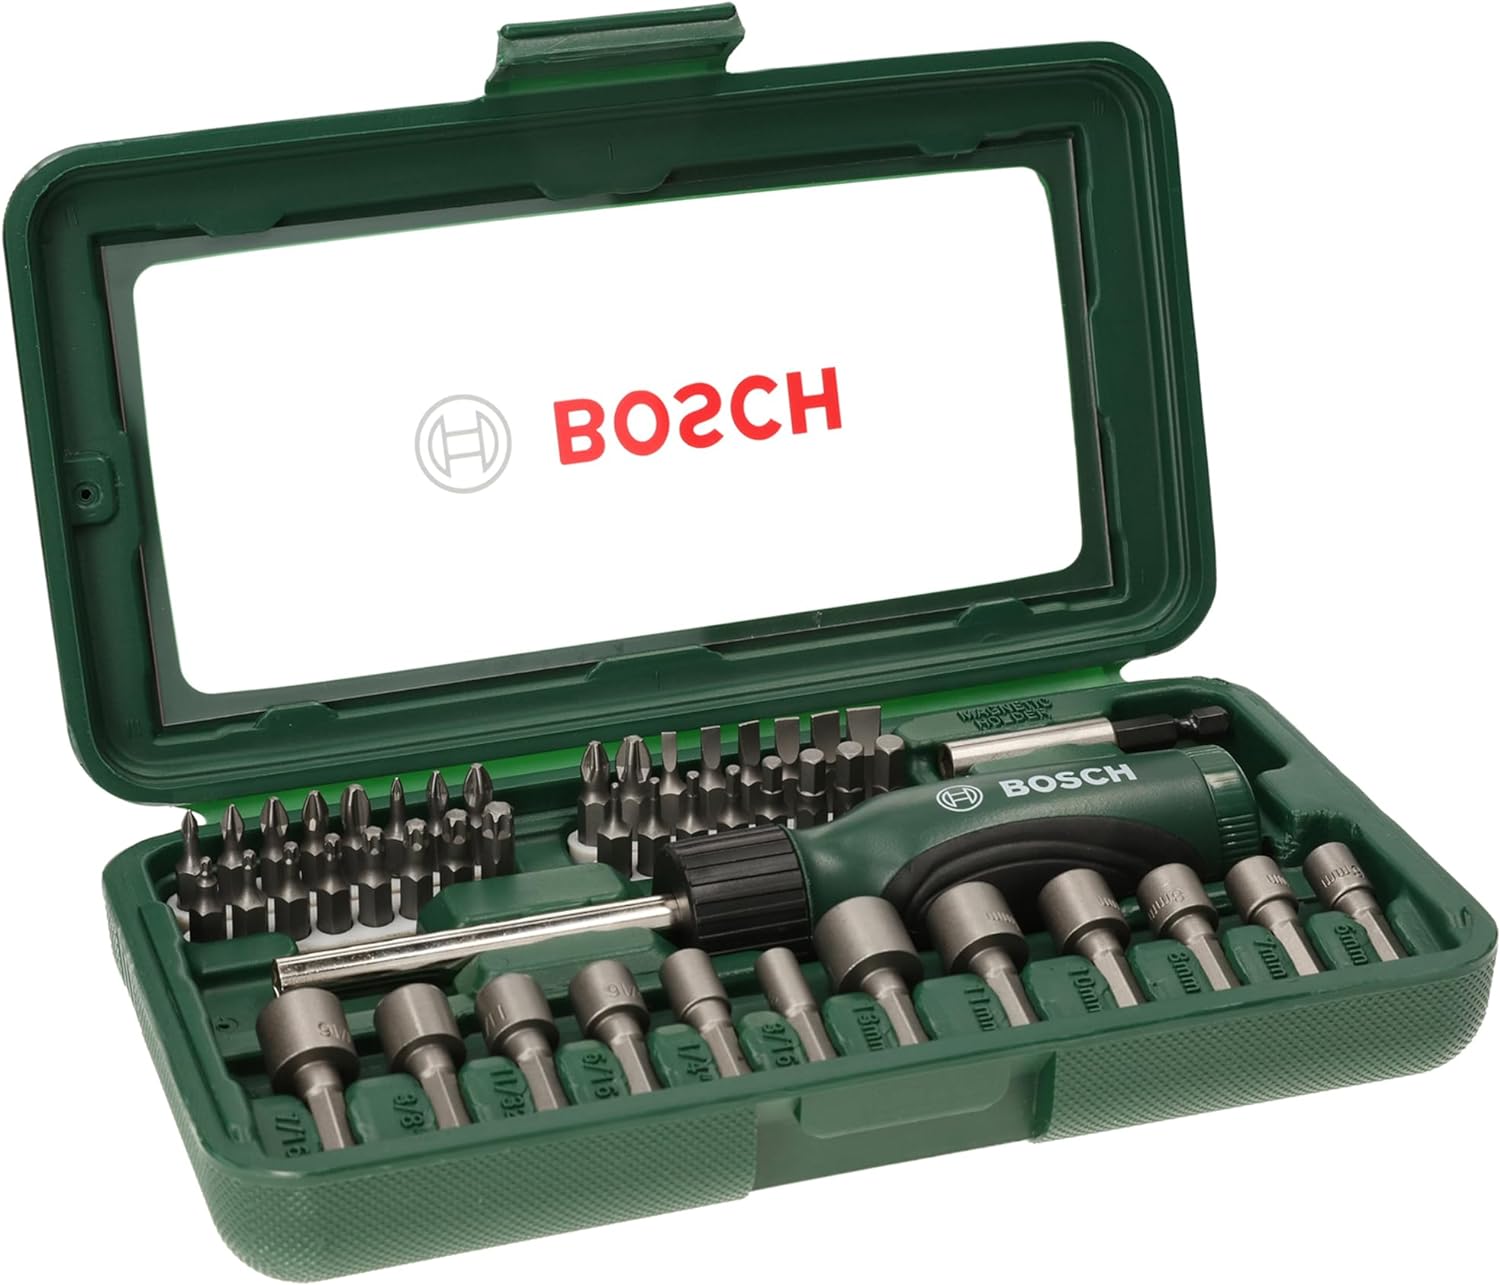 Bosch%20BC.2607019504%202.607.019.504%20-%20DIY-V%2046%20PARÇA%20VİDALAMA%20VE%20LOKMA%20UÇ%20SETİ